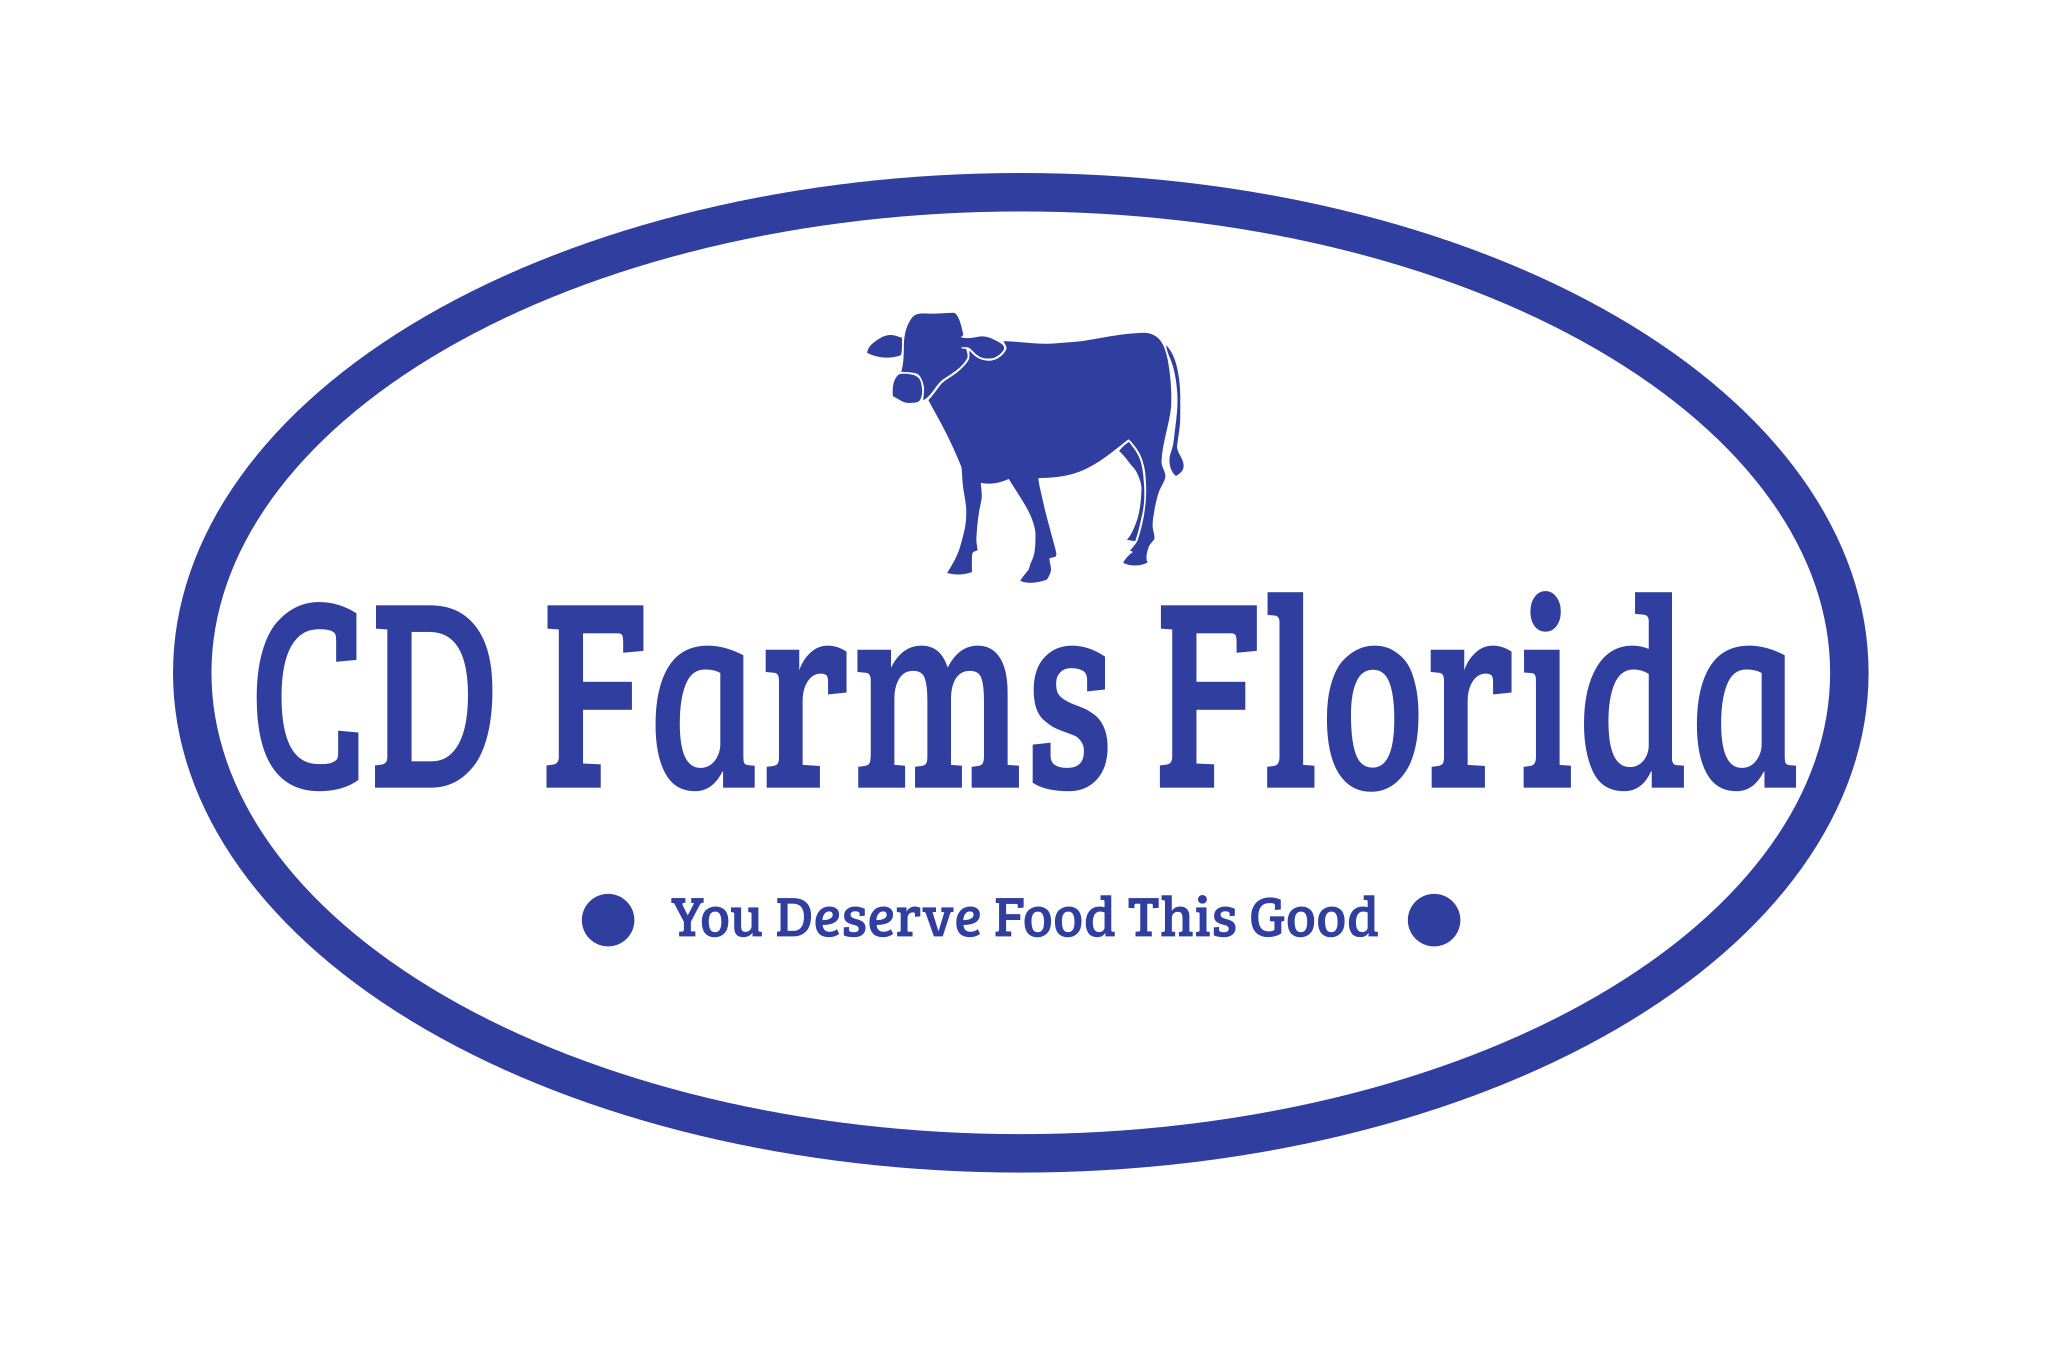 Cd-farms-florida